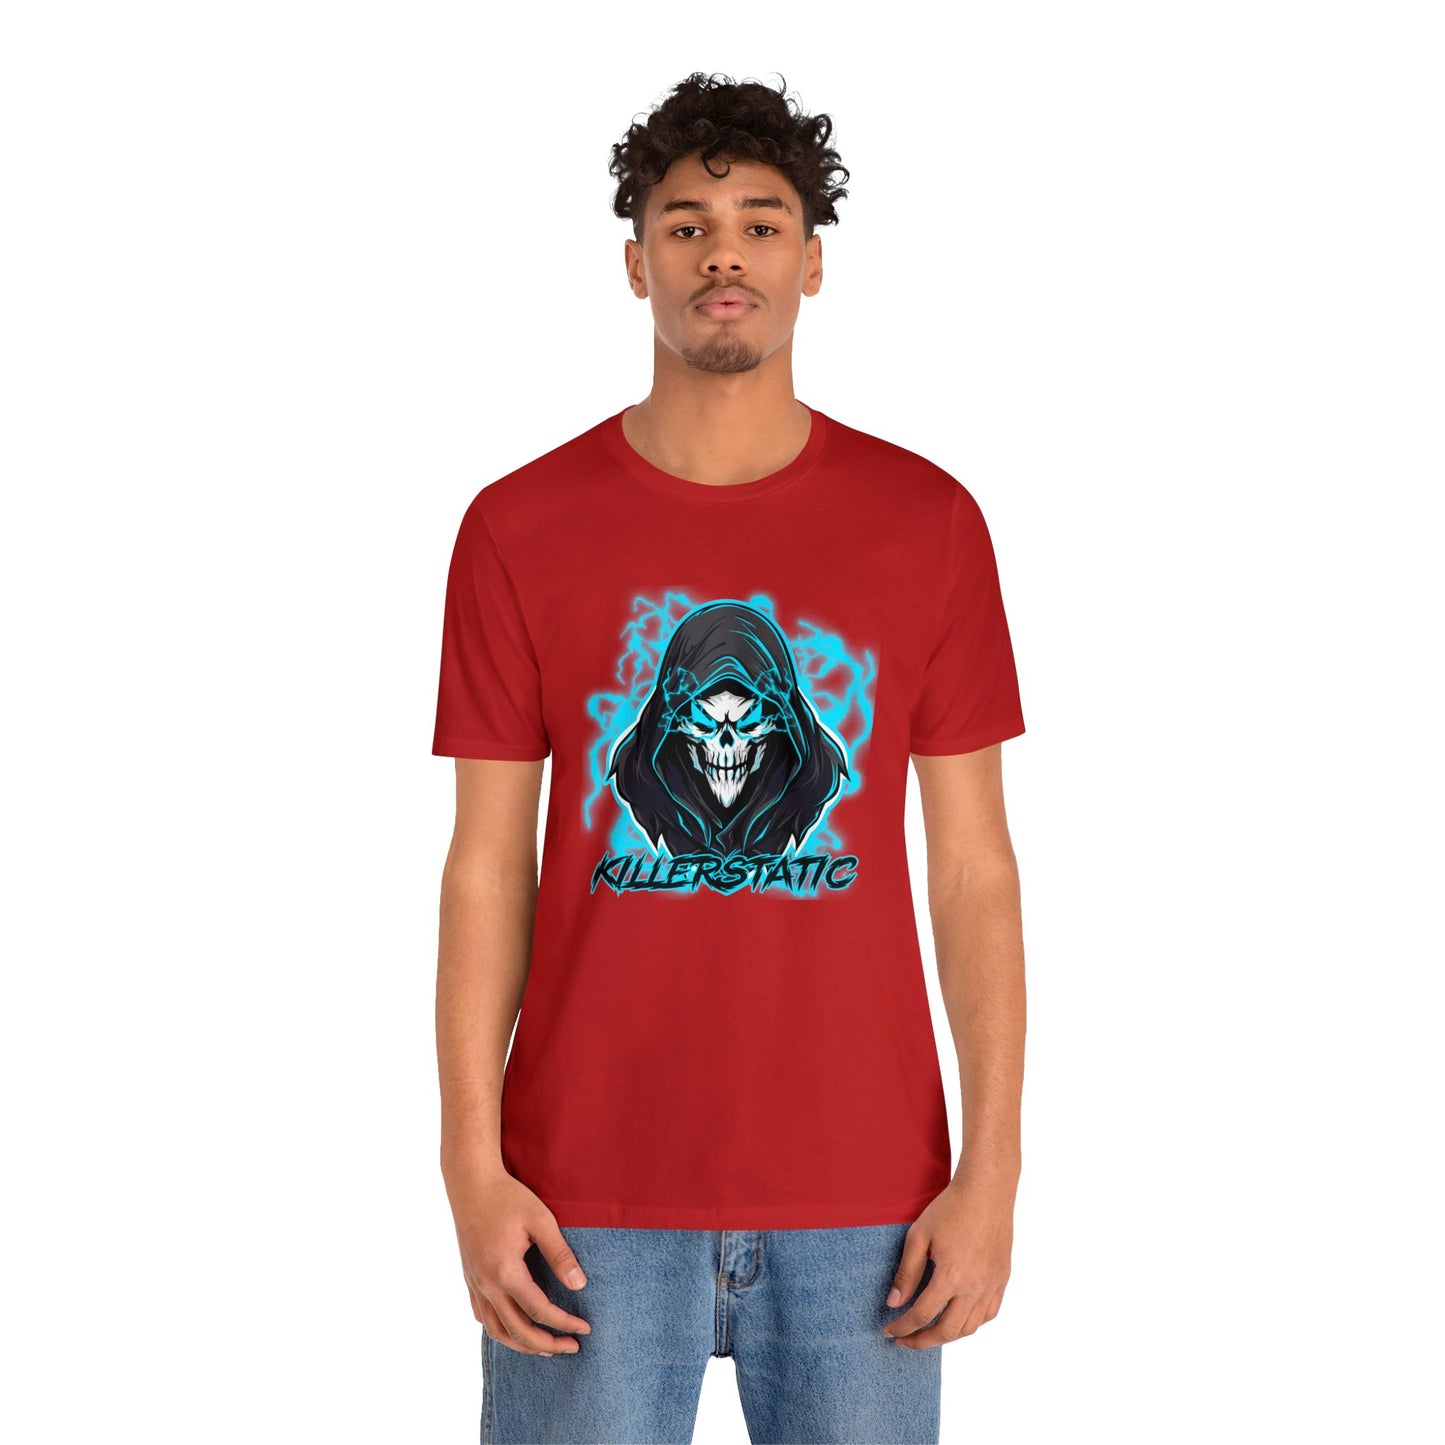 KillerStatic Unisex T-shirt